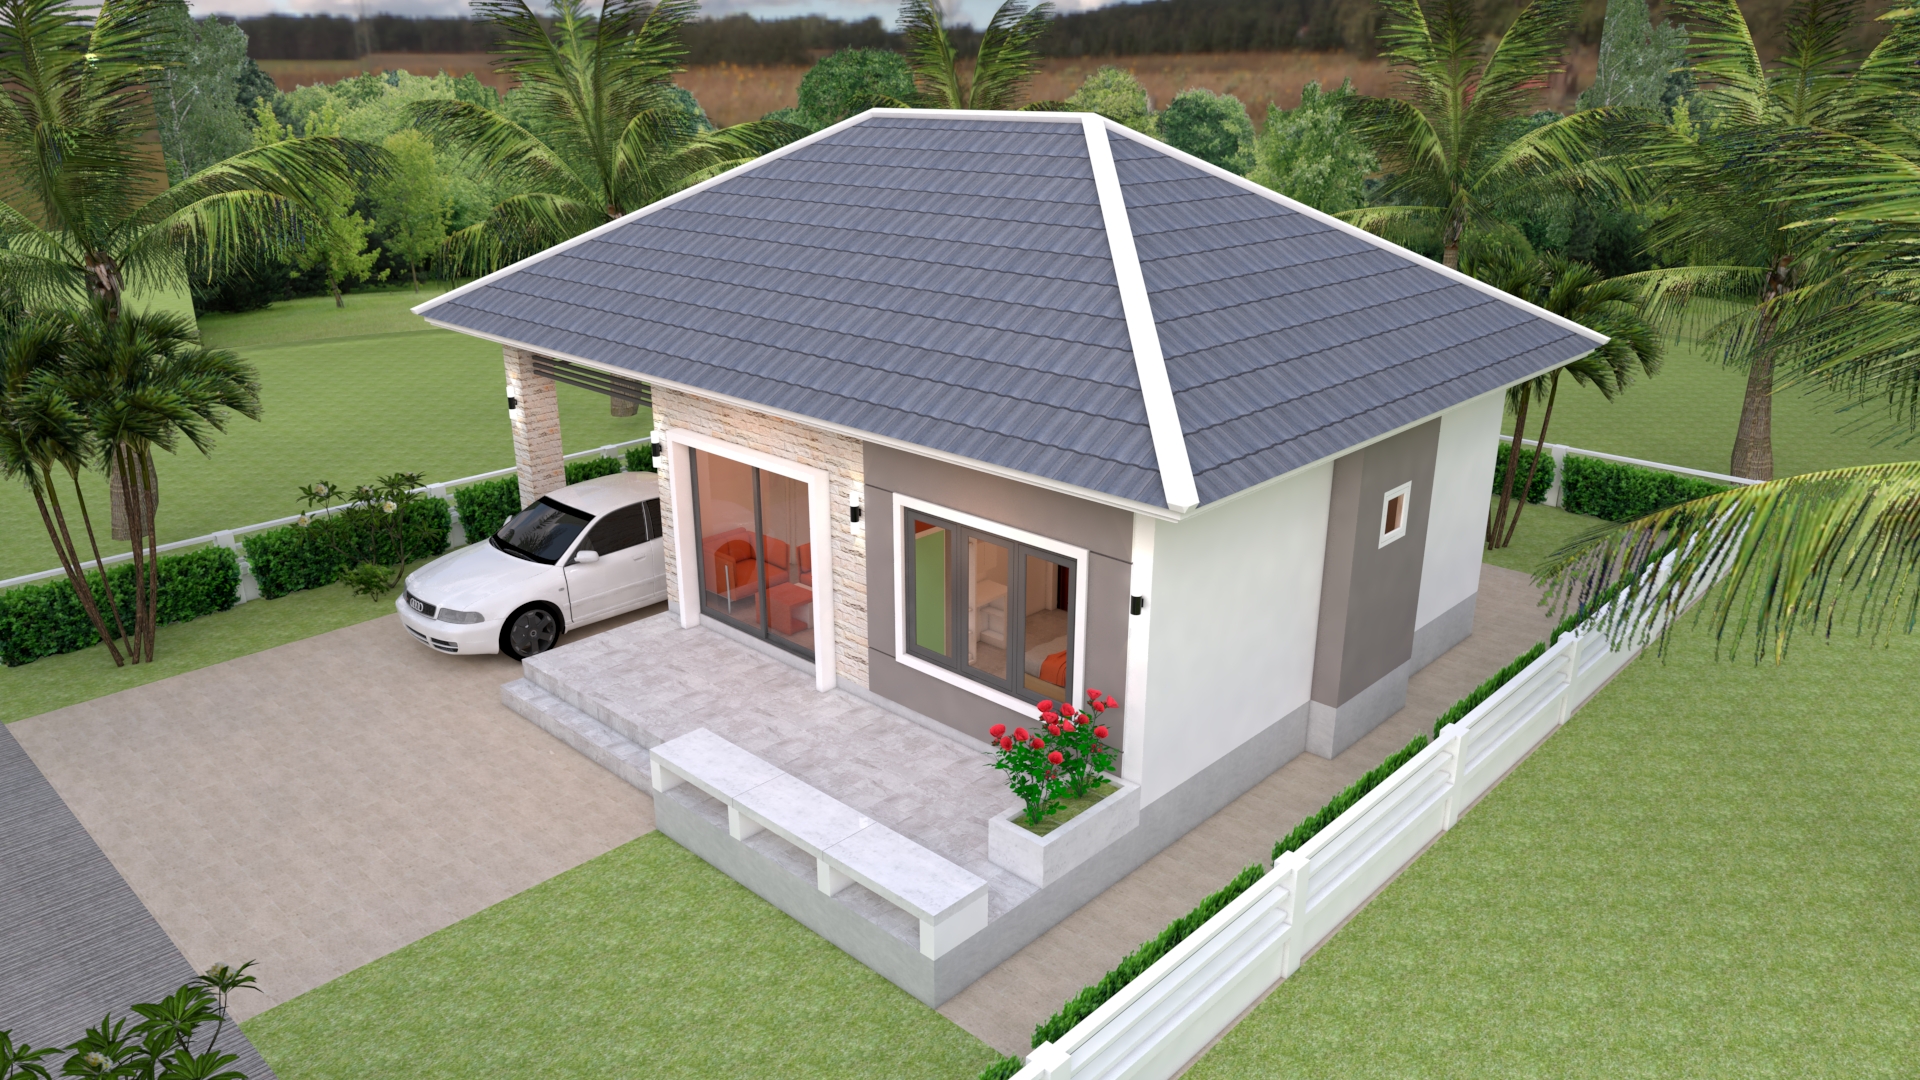 House Design 3d 11x11 Meter 36x36 Feet 3 Bedrooms Hip Roof